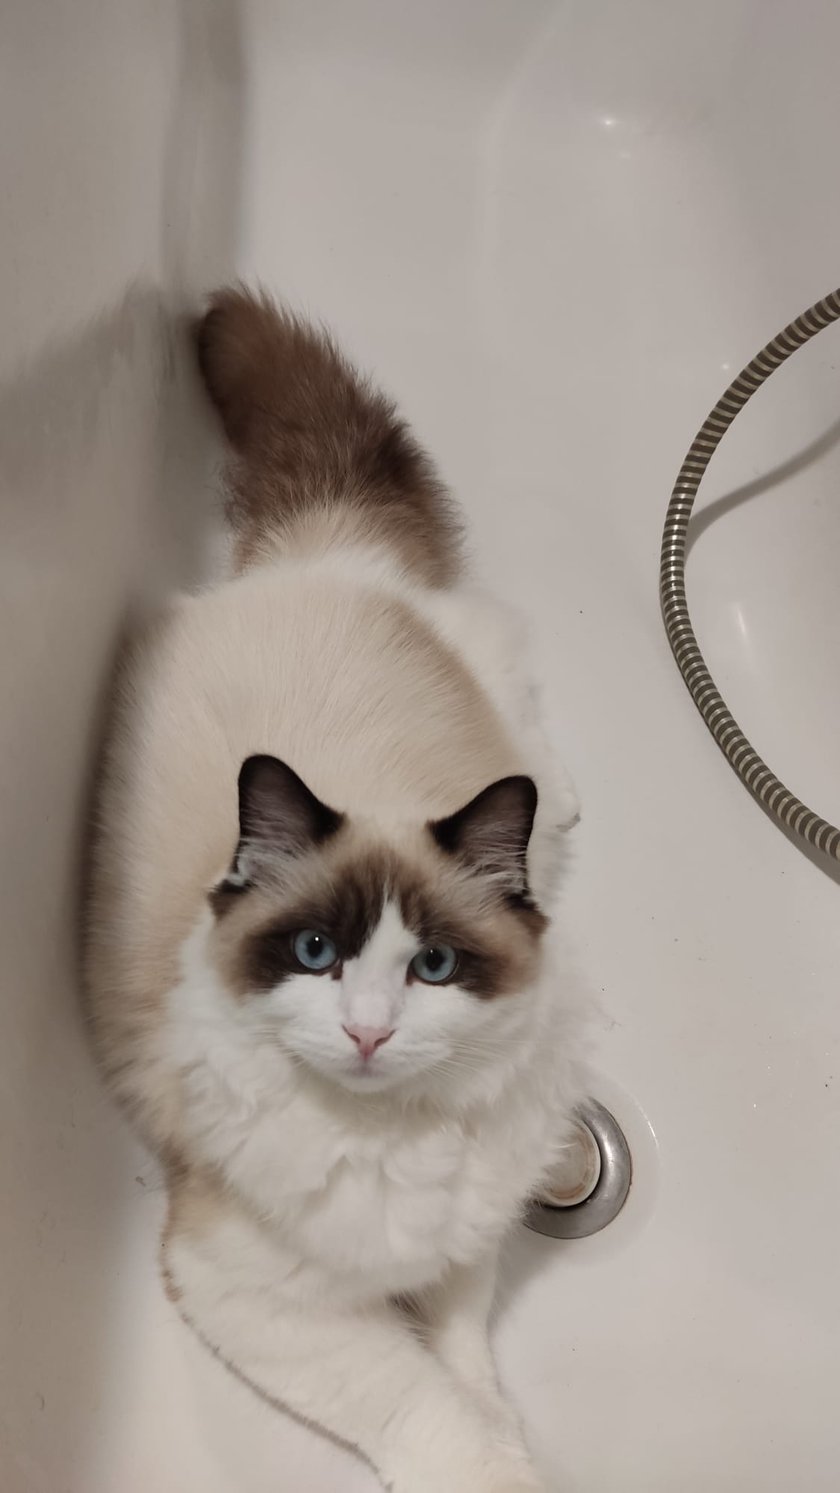 Kotek rasy ragdoll o imieniu Vector, odważny rozbójnik pilnujący właścicieli w łazience, aby coś się im nie stało